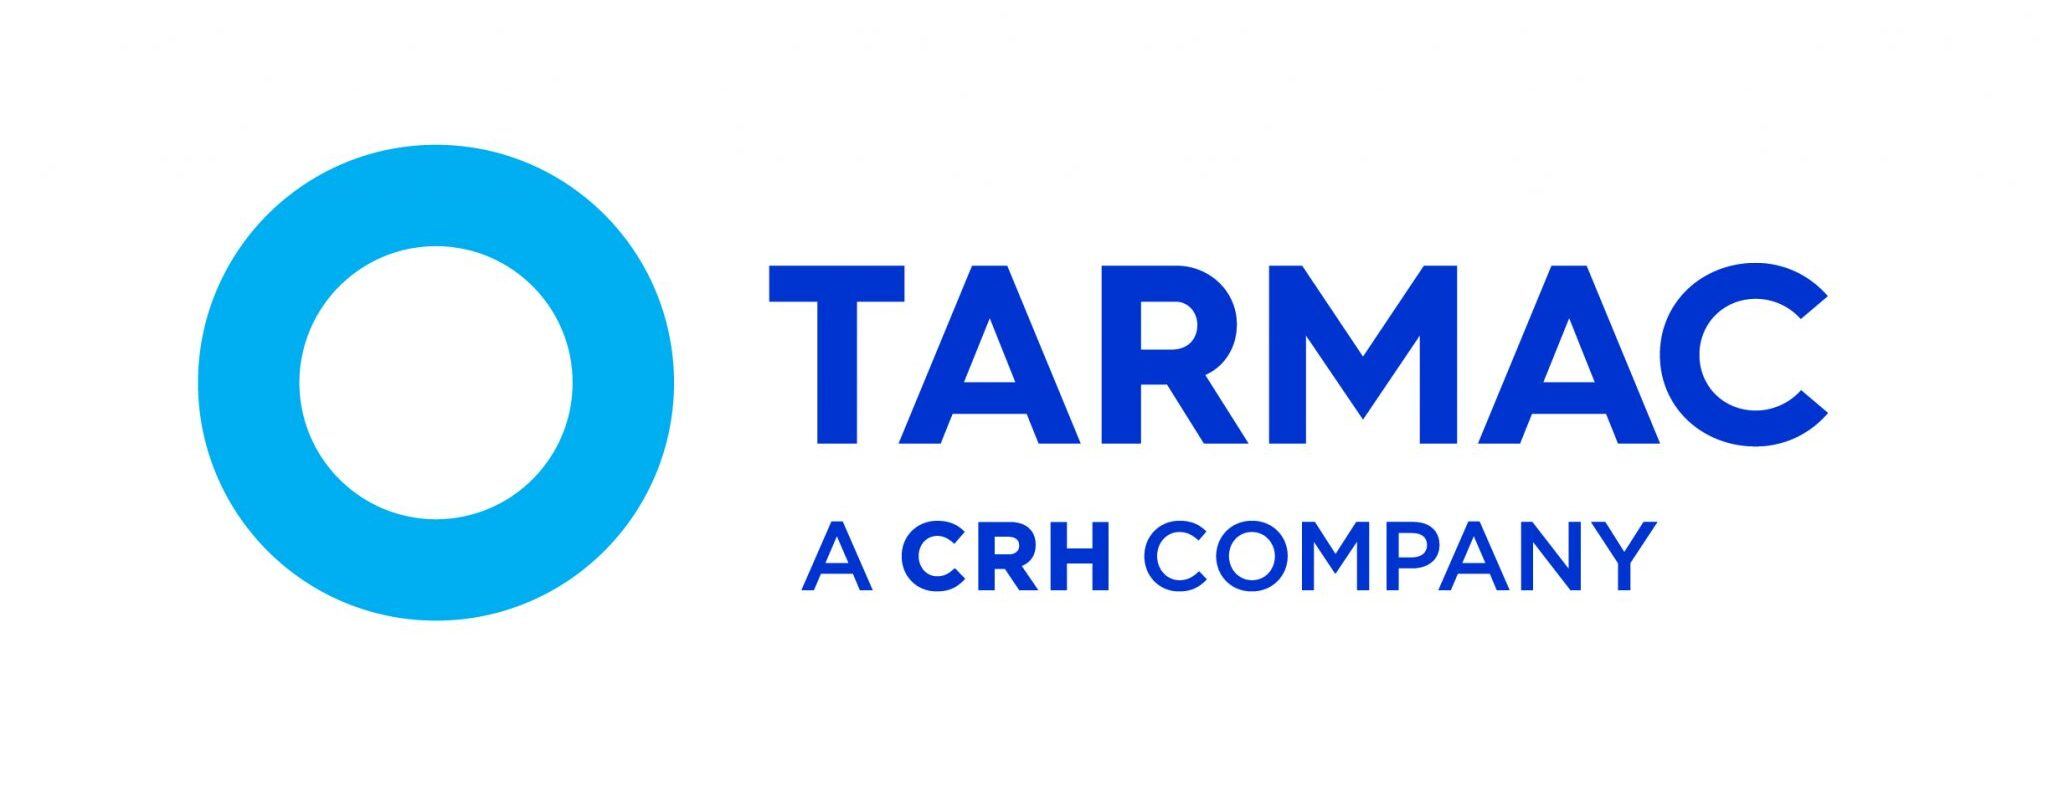 Tarmac-logo-1-e1583332759555